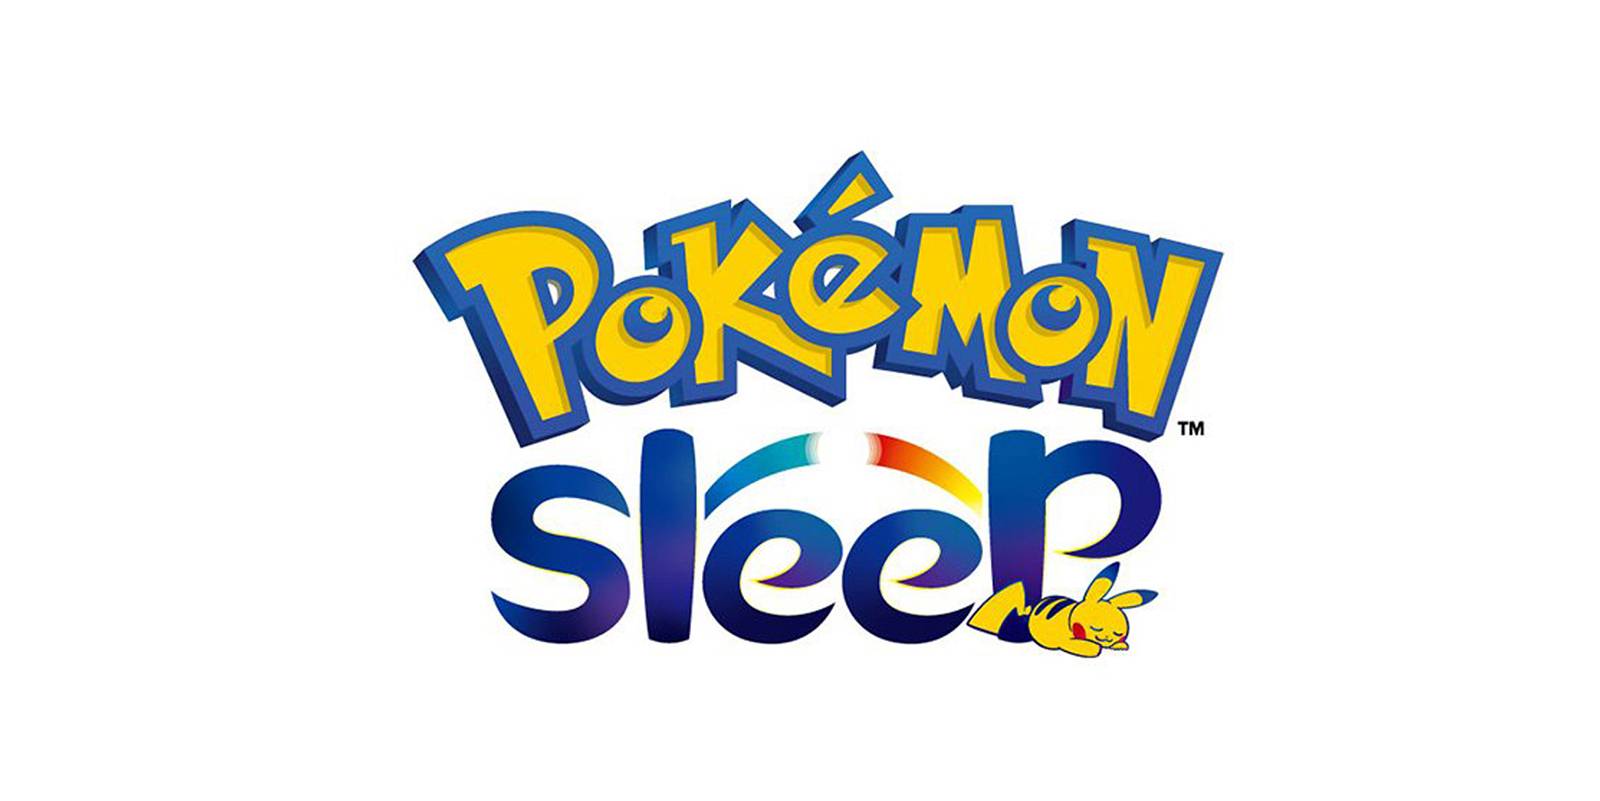 Pokemone lovite u snu: Nova igra pomoći će da bolje spavate